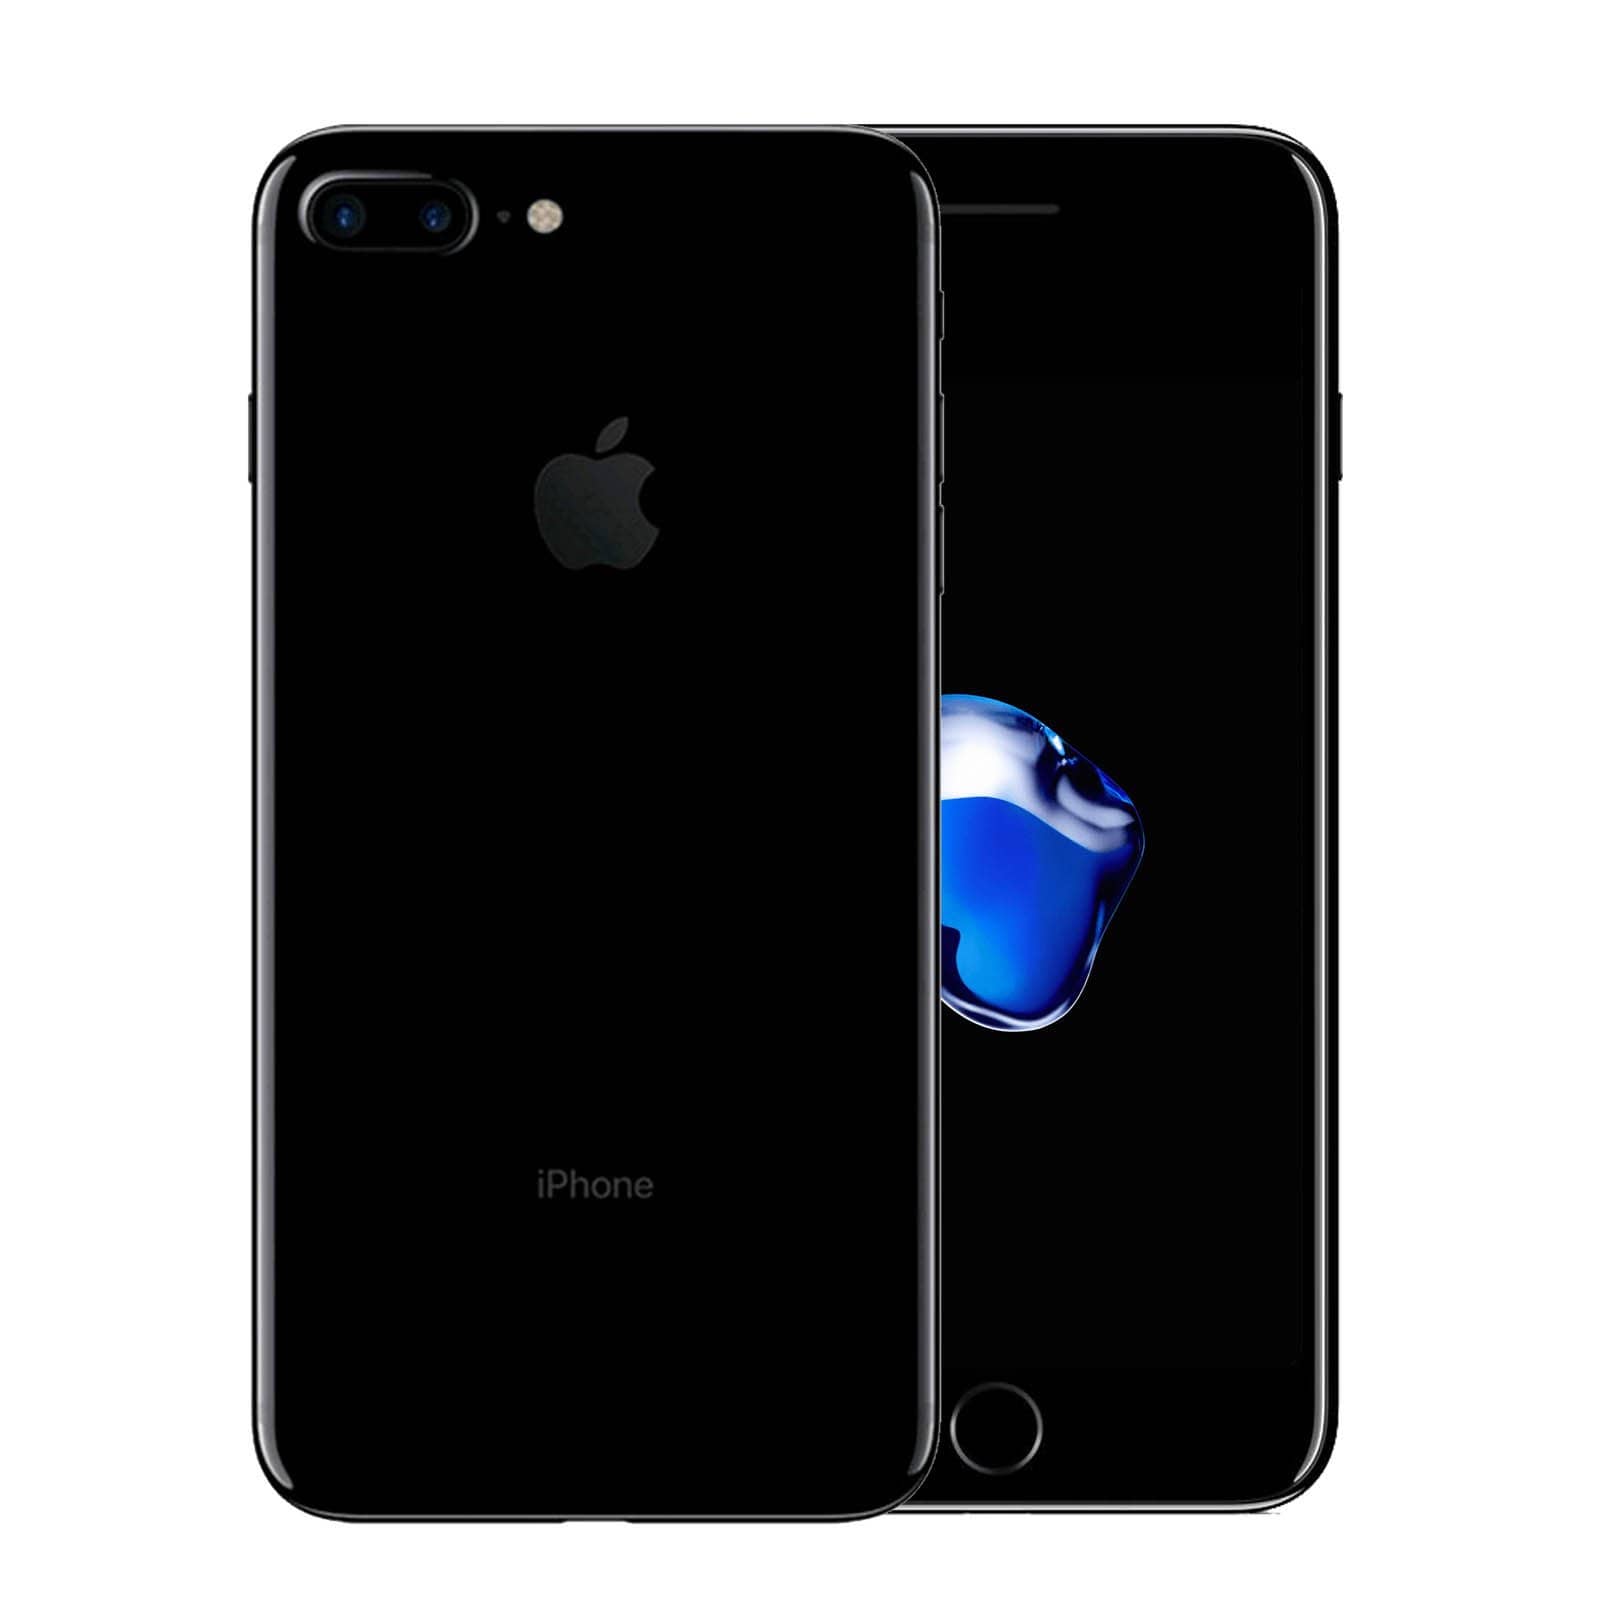 Apple iPhone 7 Plus 256GB Jet Black Good - Unlocked 256GB Jet Black Good